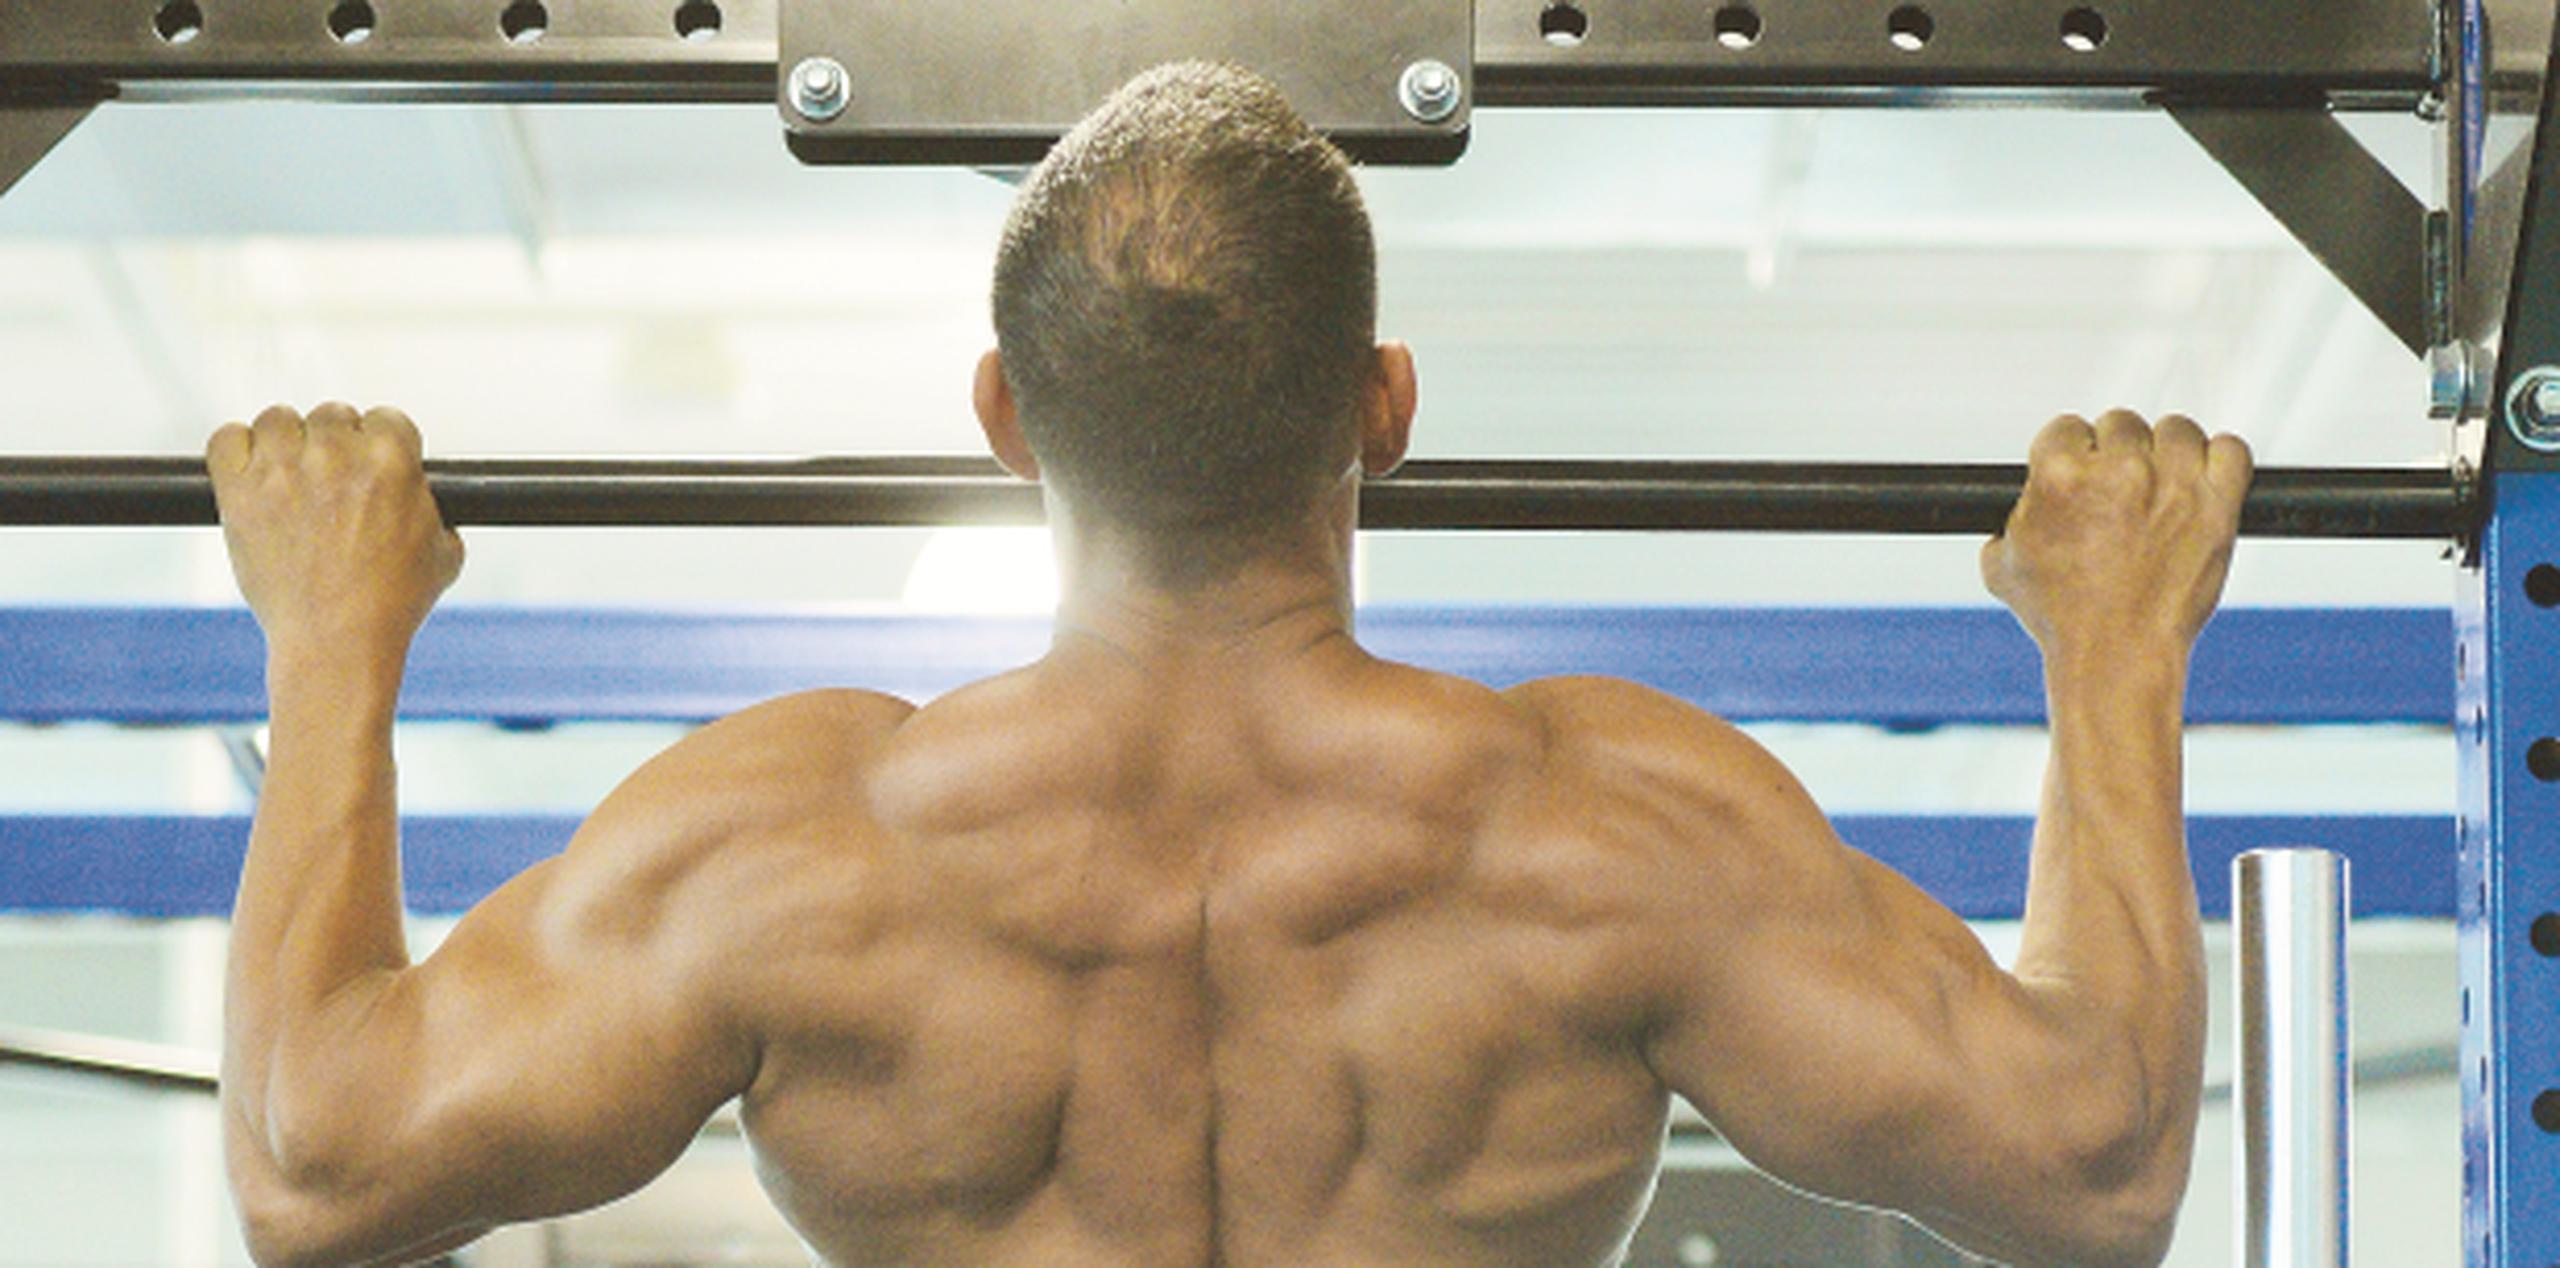 Los jueces suelen enfocarse bastante en la definición muscular de la espalda de cada competidor. (luis.alcaladelolmo@gfrmedia.com)
